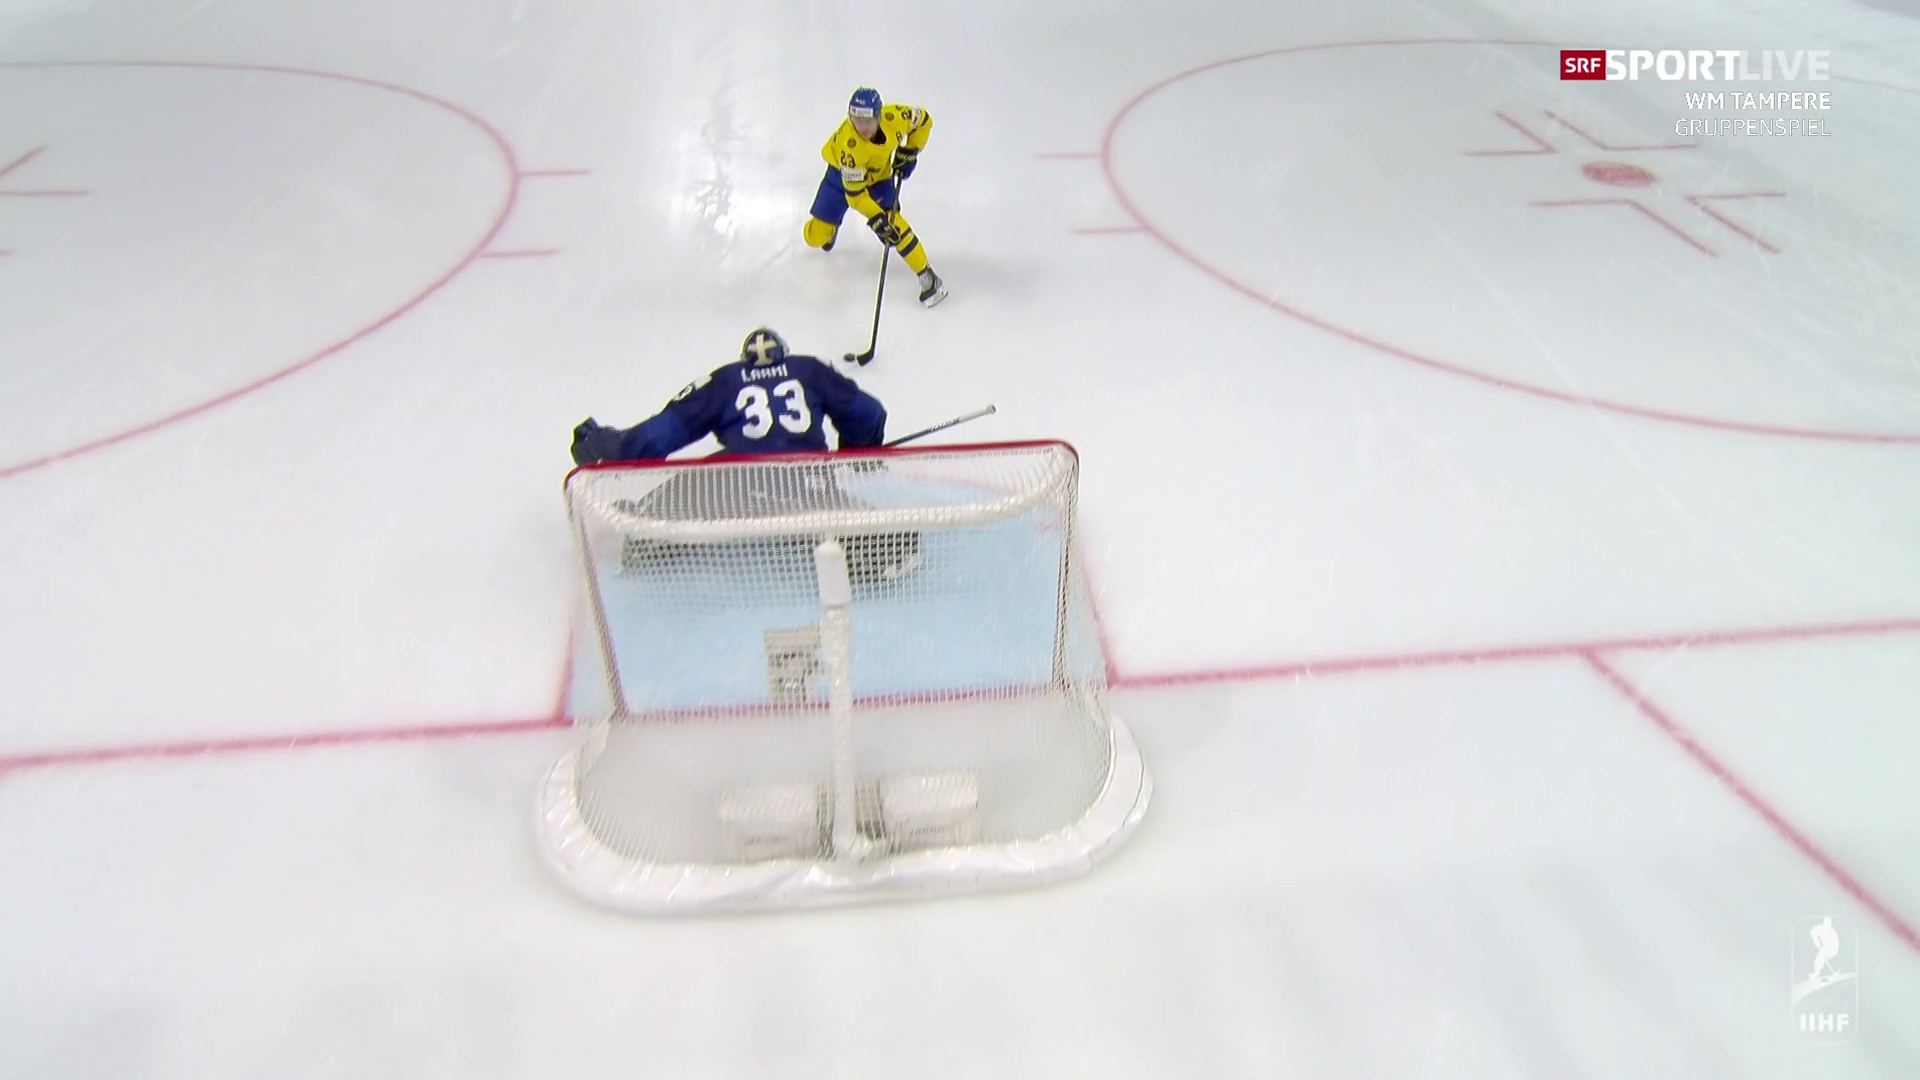 Eishockey-WM am Montag - Schweden jubelt gegen Finnland nach Penalty-Krimi - Sport